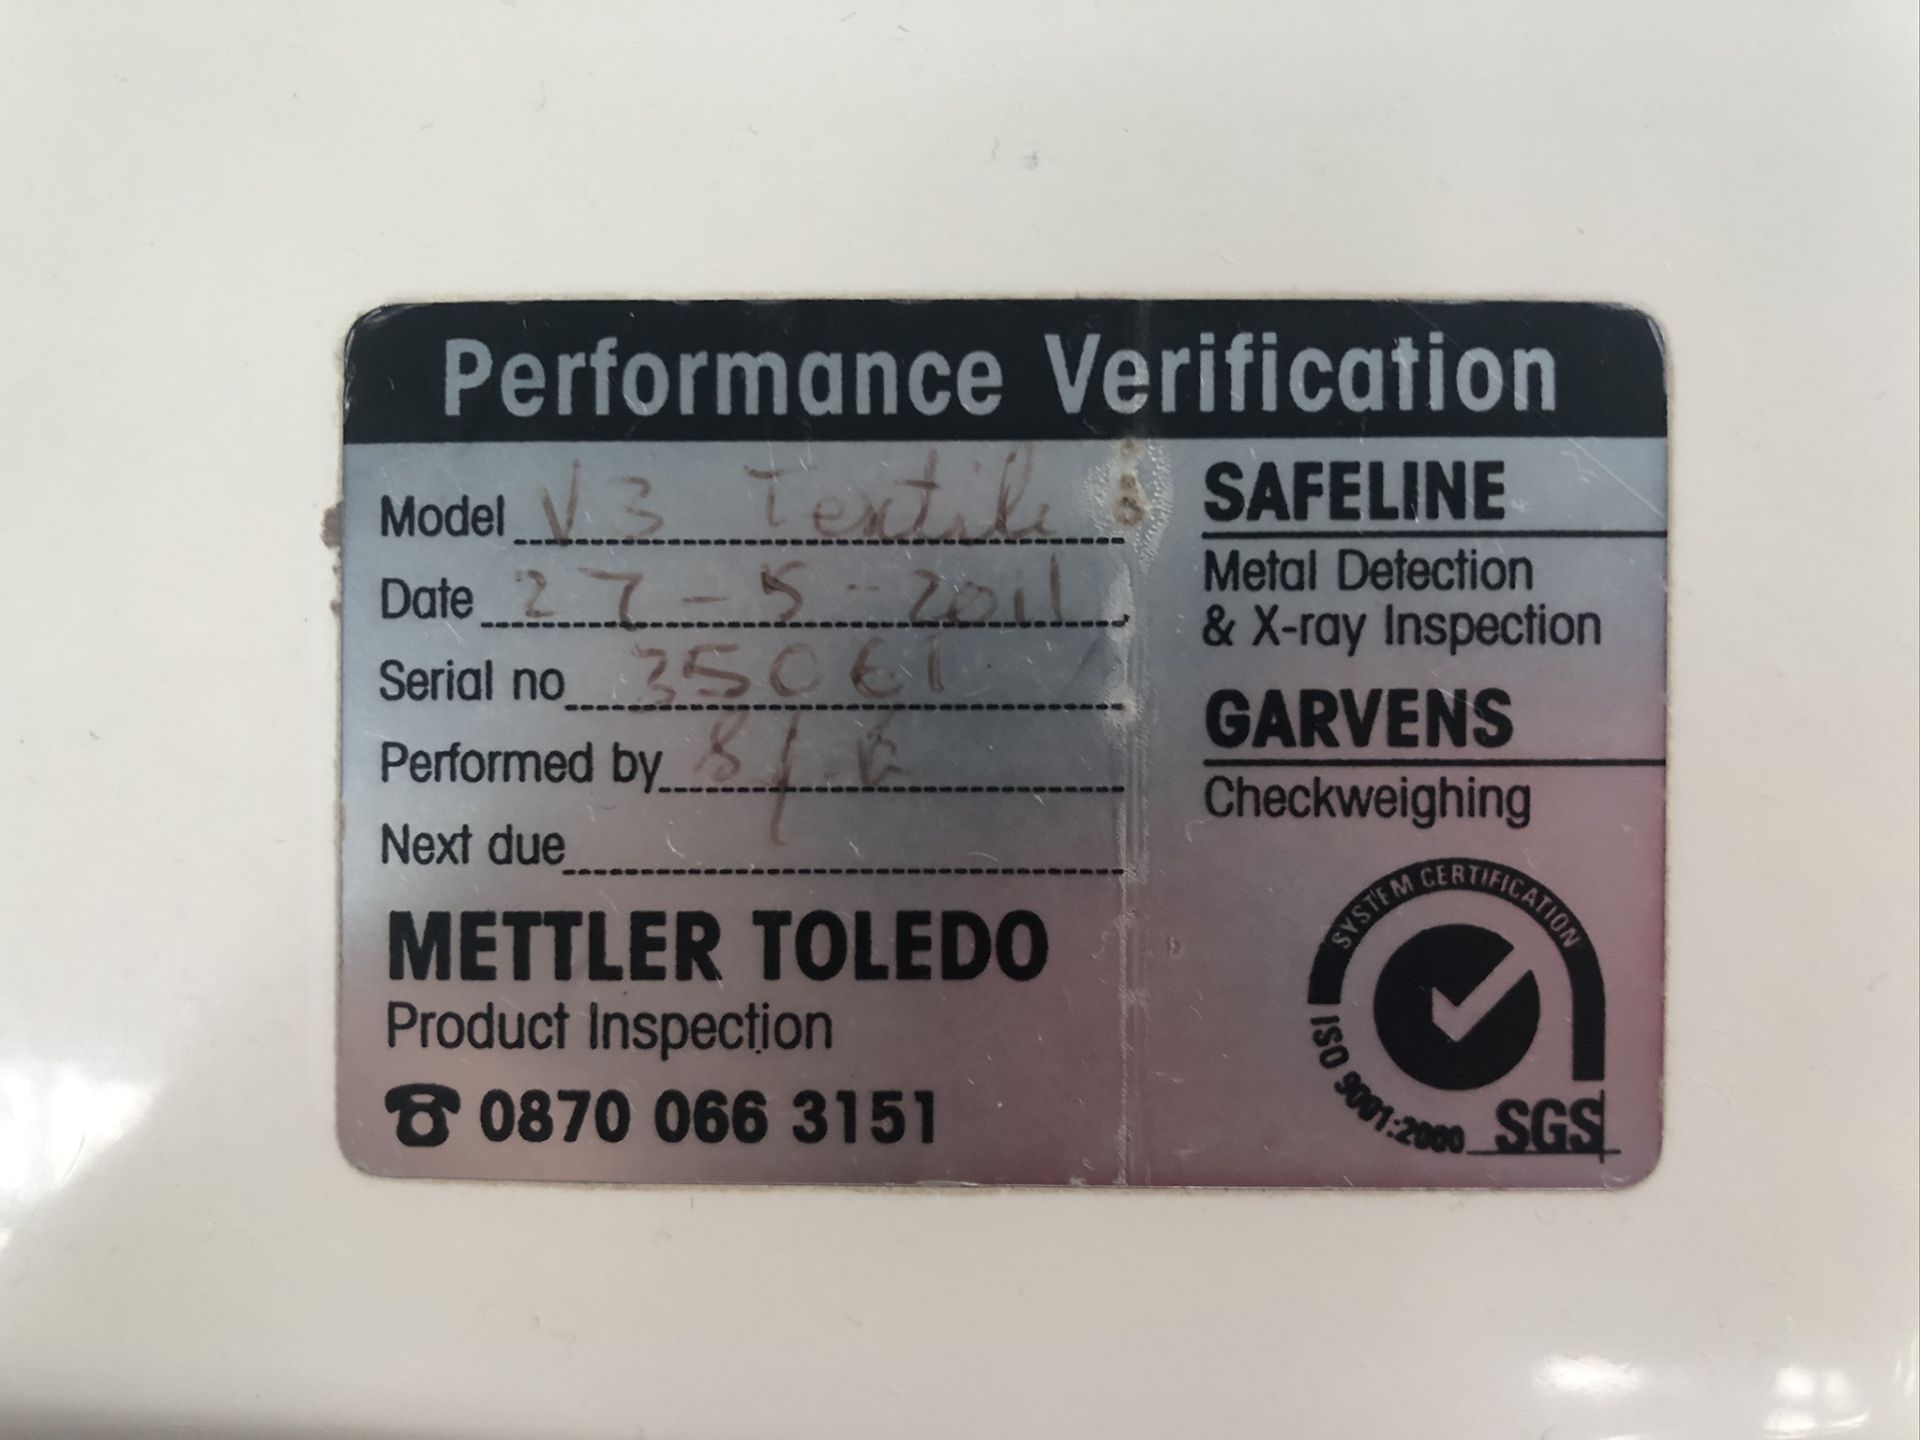 Mettler Toledo Safe Safeline V3 textile metal detector - Image 5 of 8